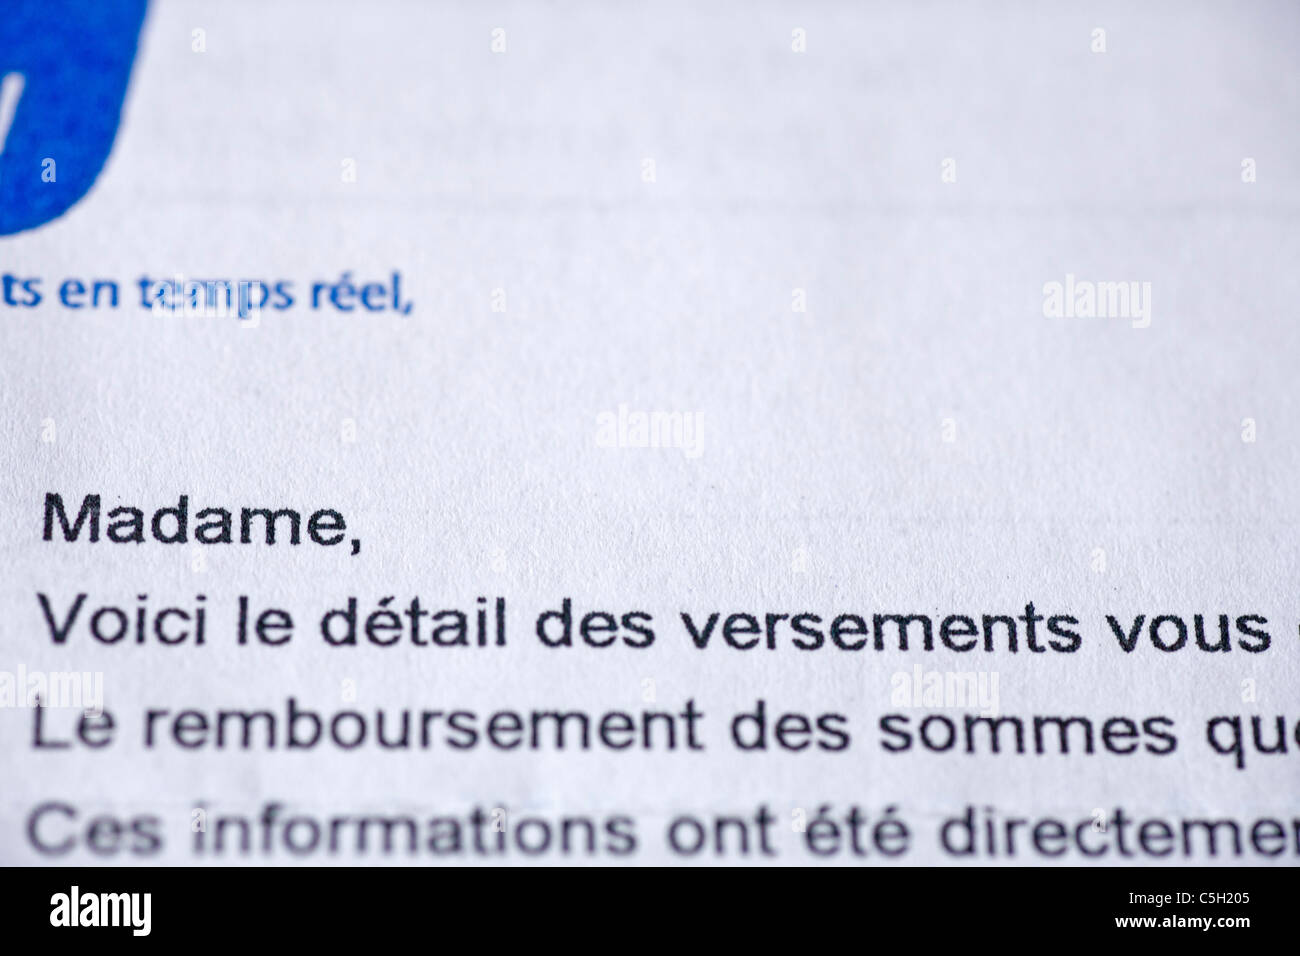 Ouverture de lettre de l'assurance maladie, branche de la Sécurité Sociale Française Banque D'Images